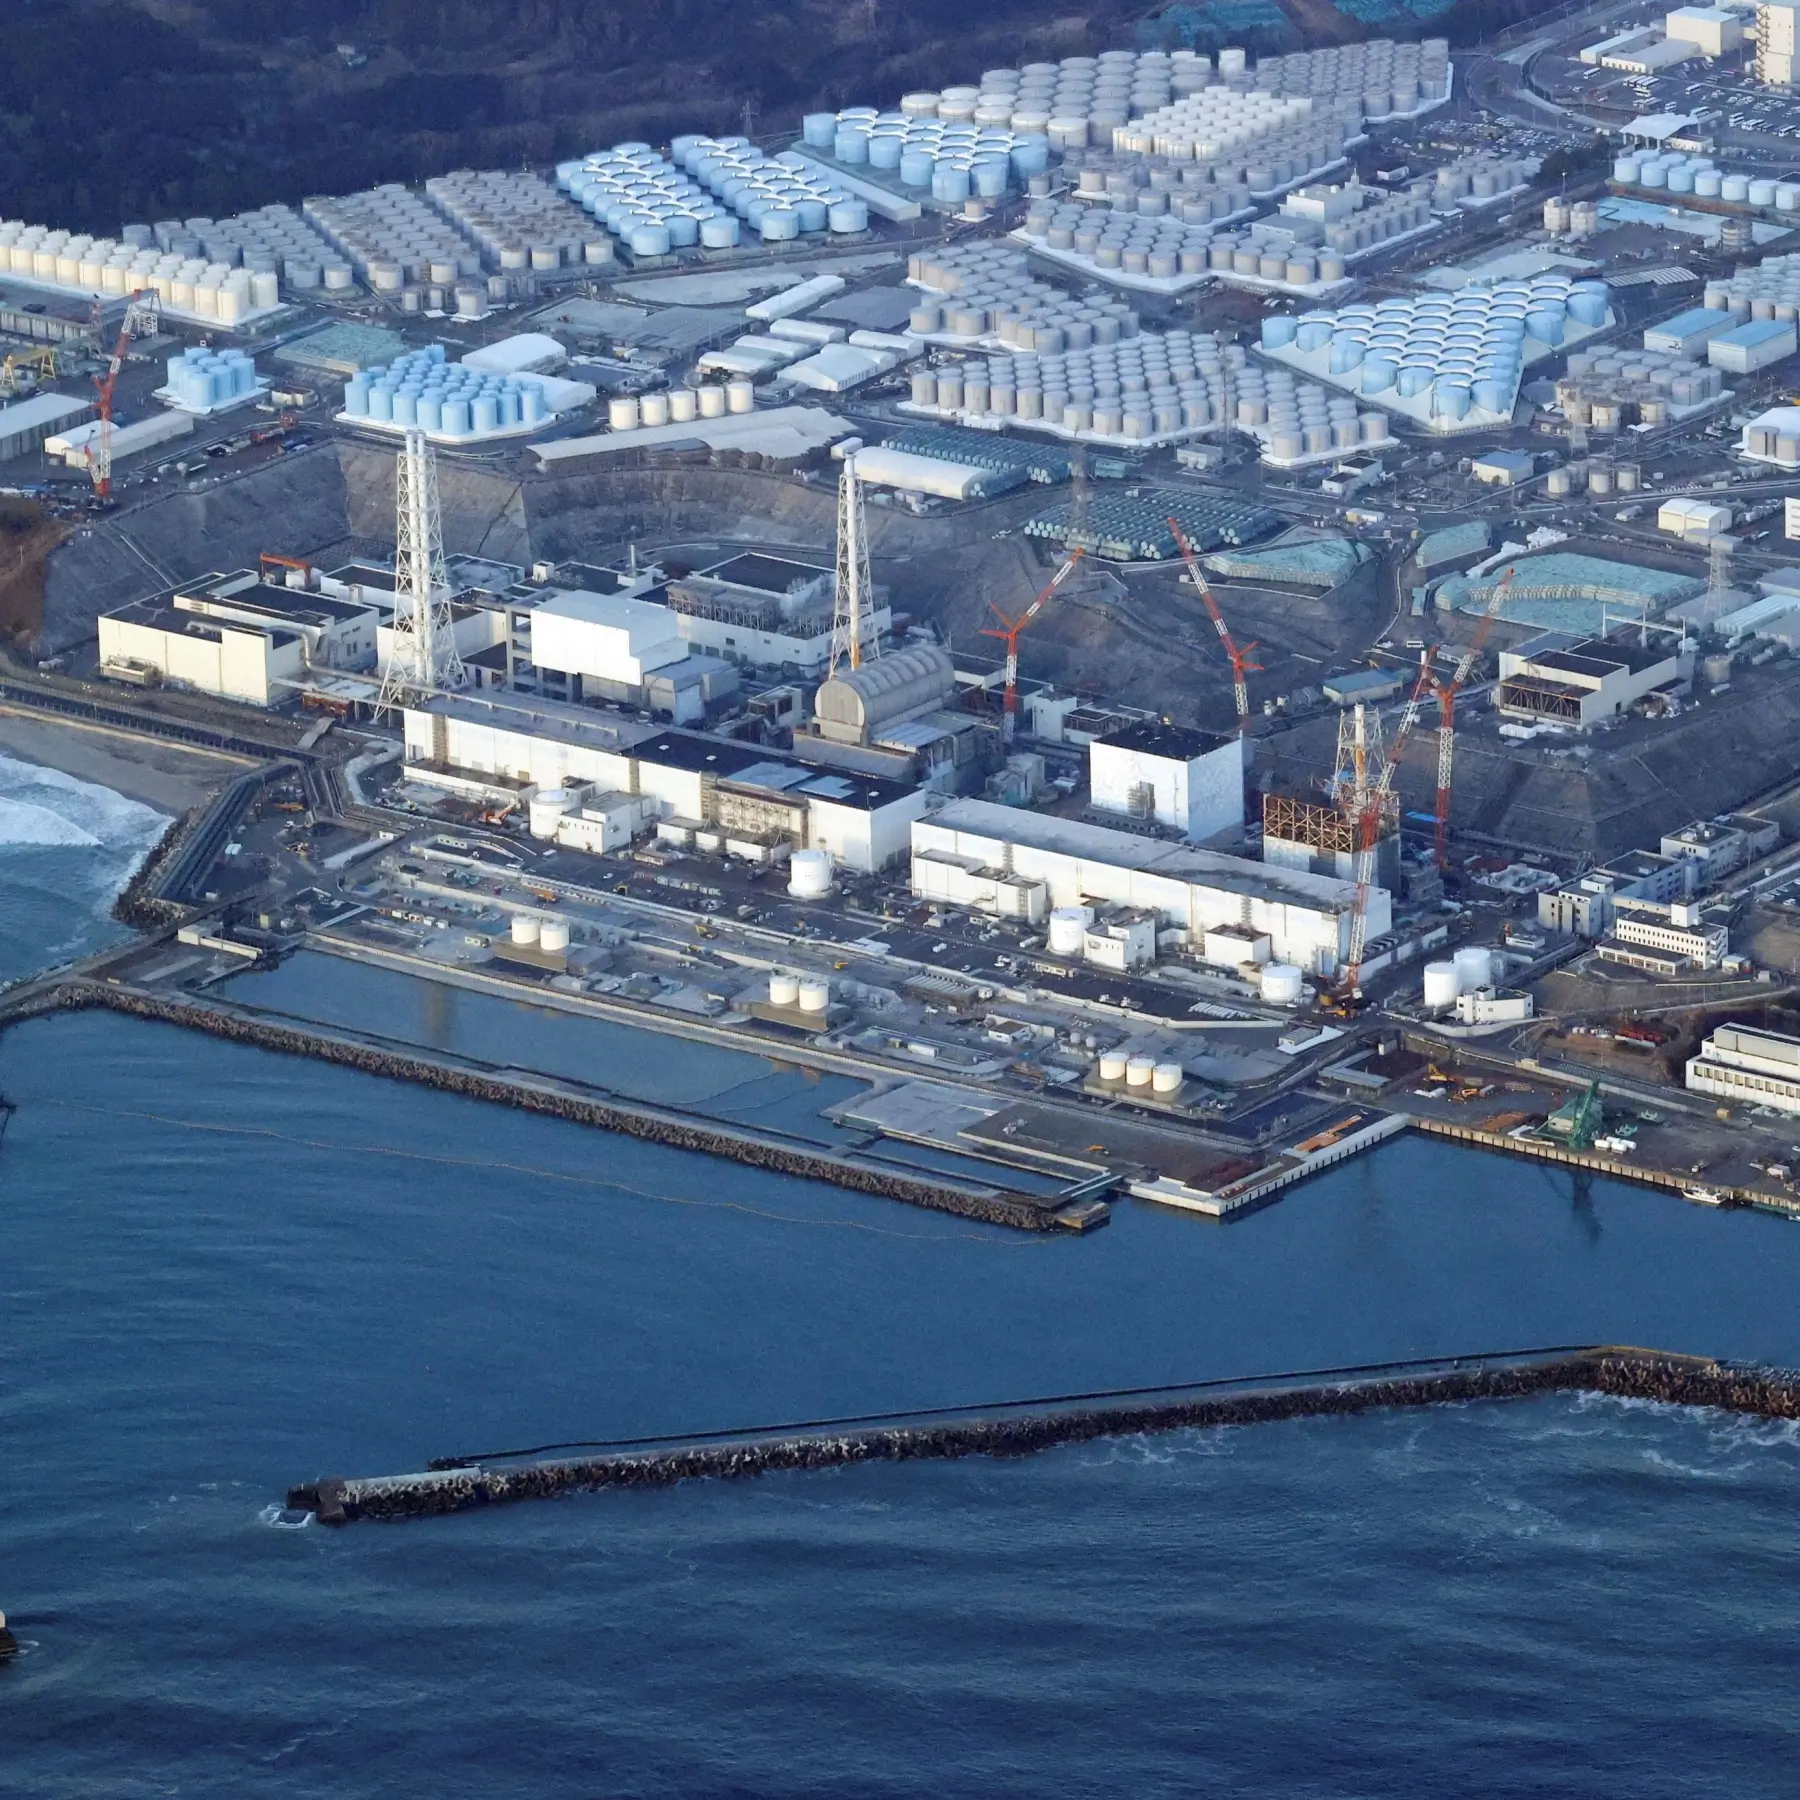 แผนการของญี่ปุ่นที่จะปล่อยน้ำกัมมันตภาพรังสีฟุกุชิมะสู่มหาสมุทรทำให้เกิดความกังวล